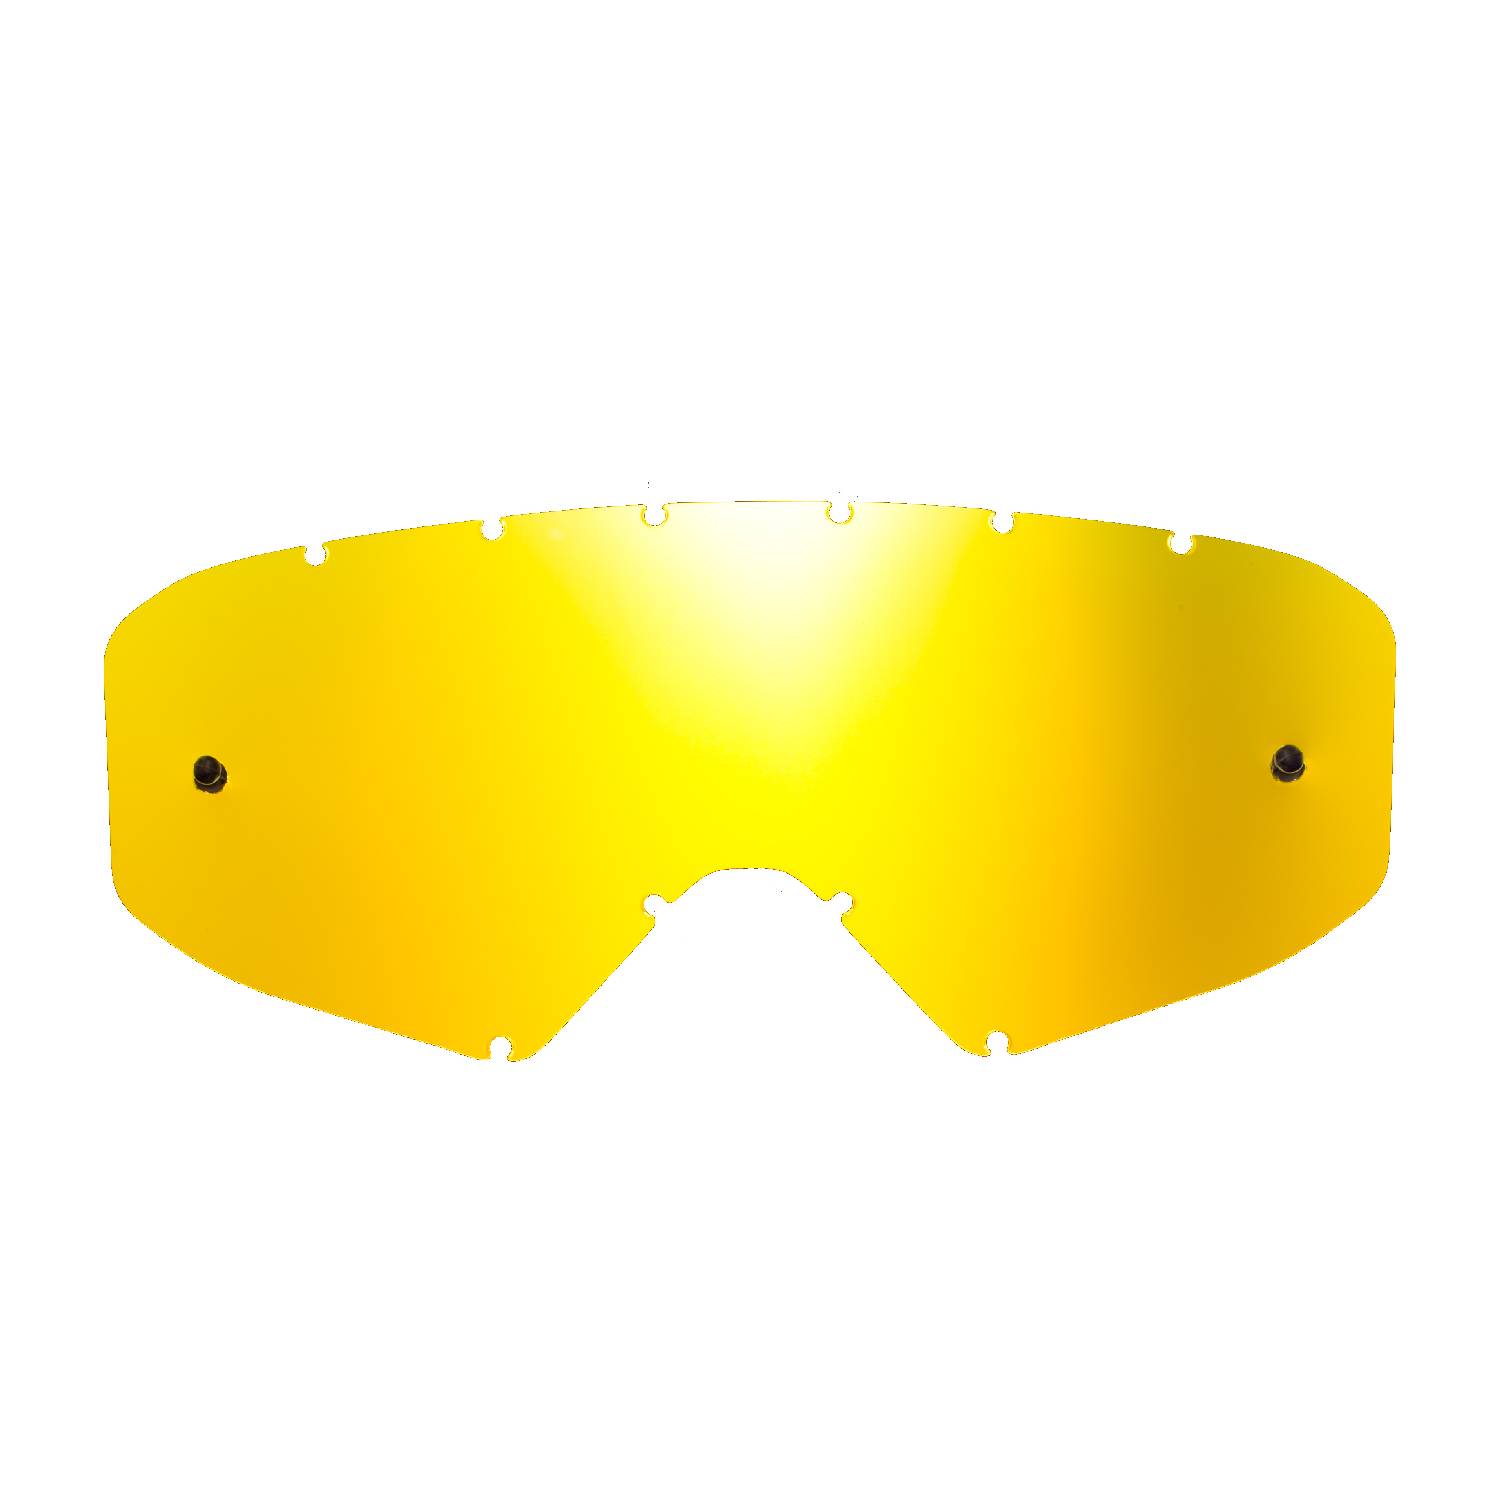 Lente di ricambio oro specchiato compatibile per occhiale/maschera cross Ethen Zerocinque Primis / R / Ares / Ares Pluma